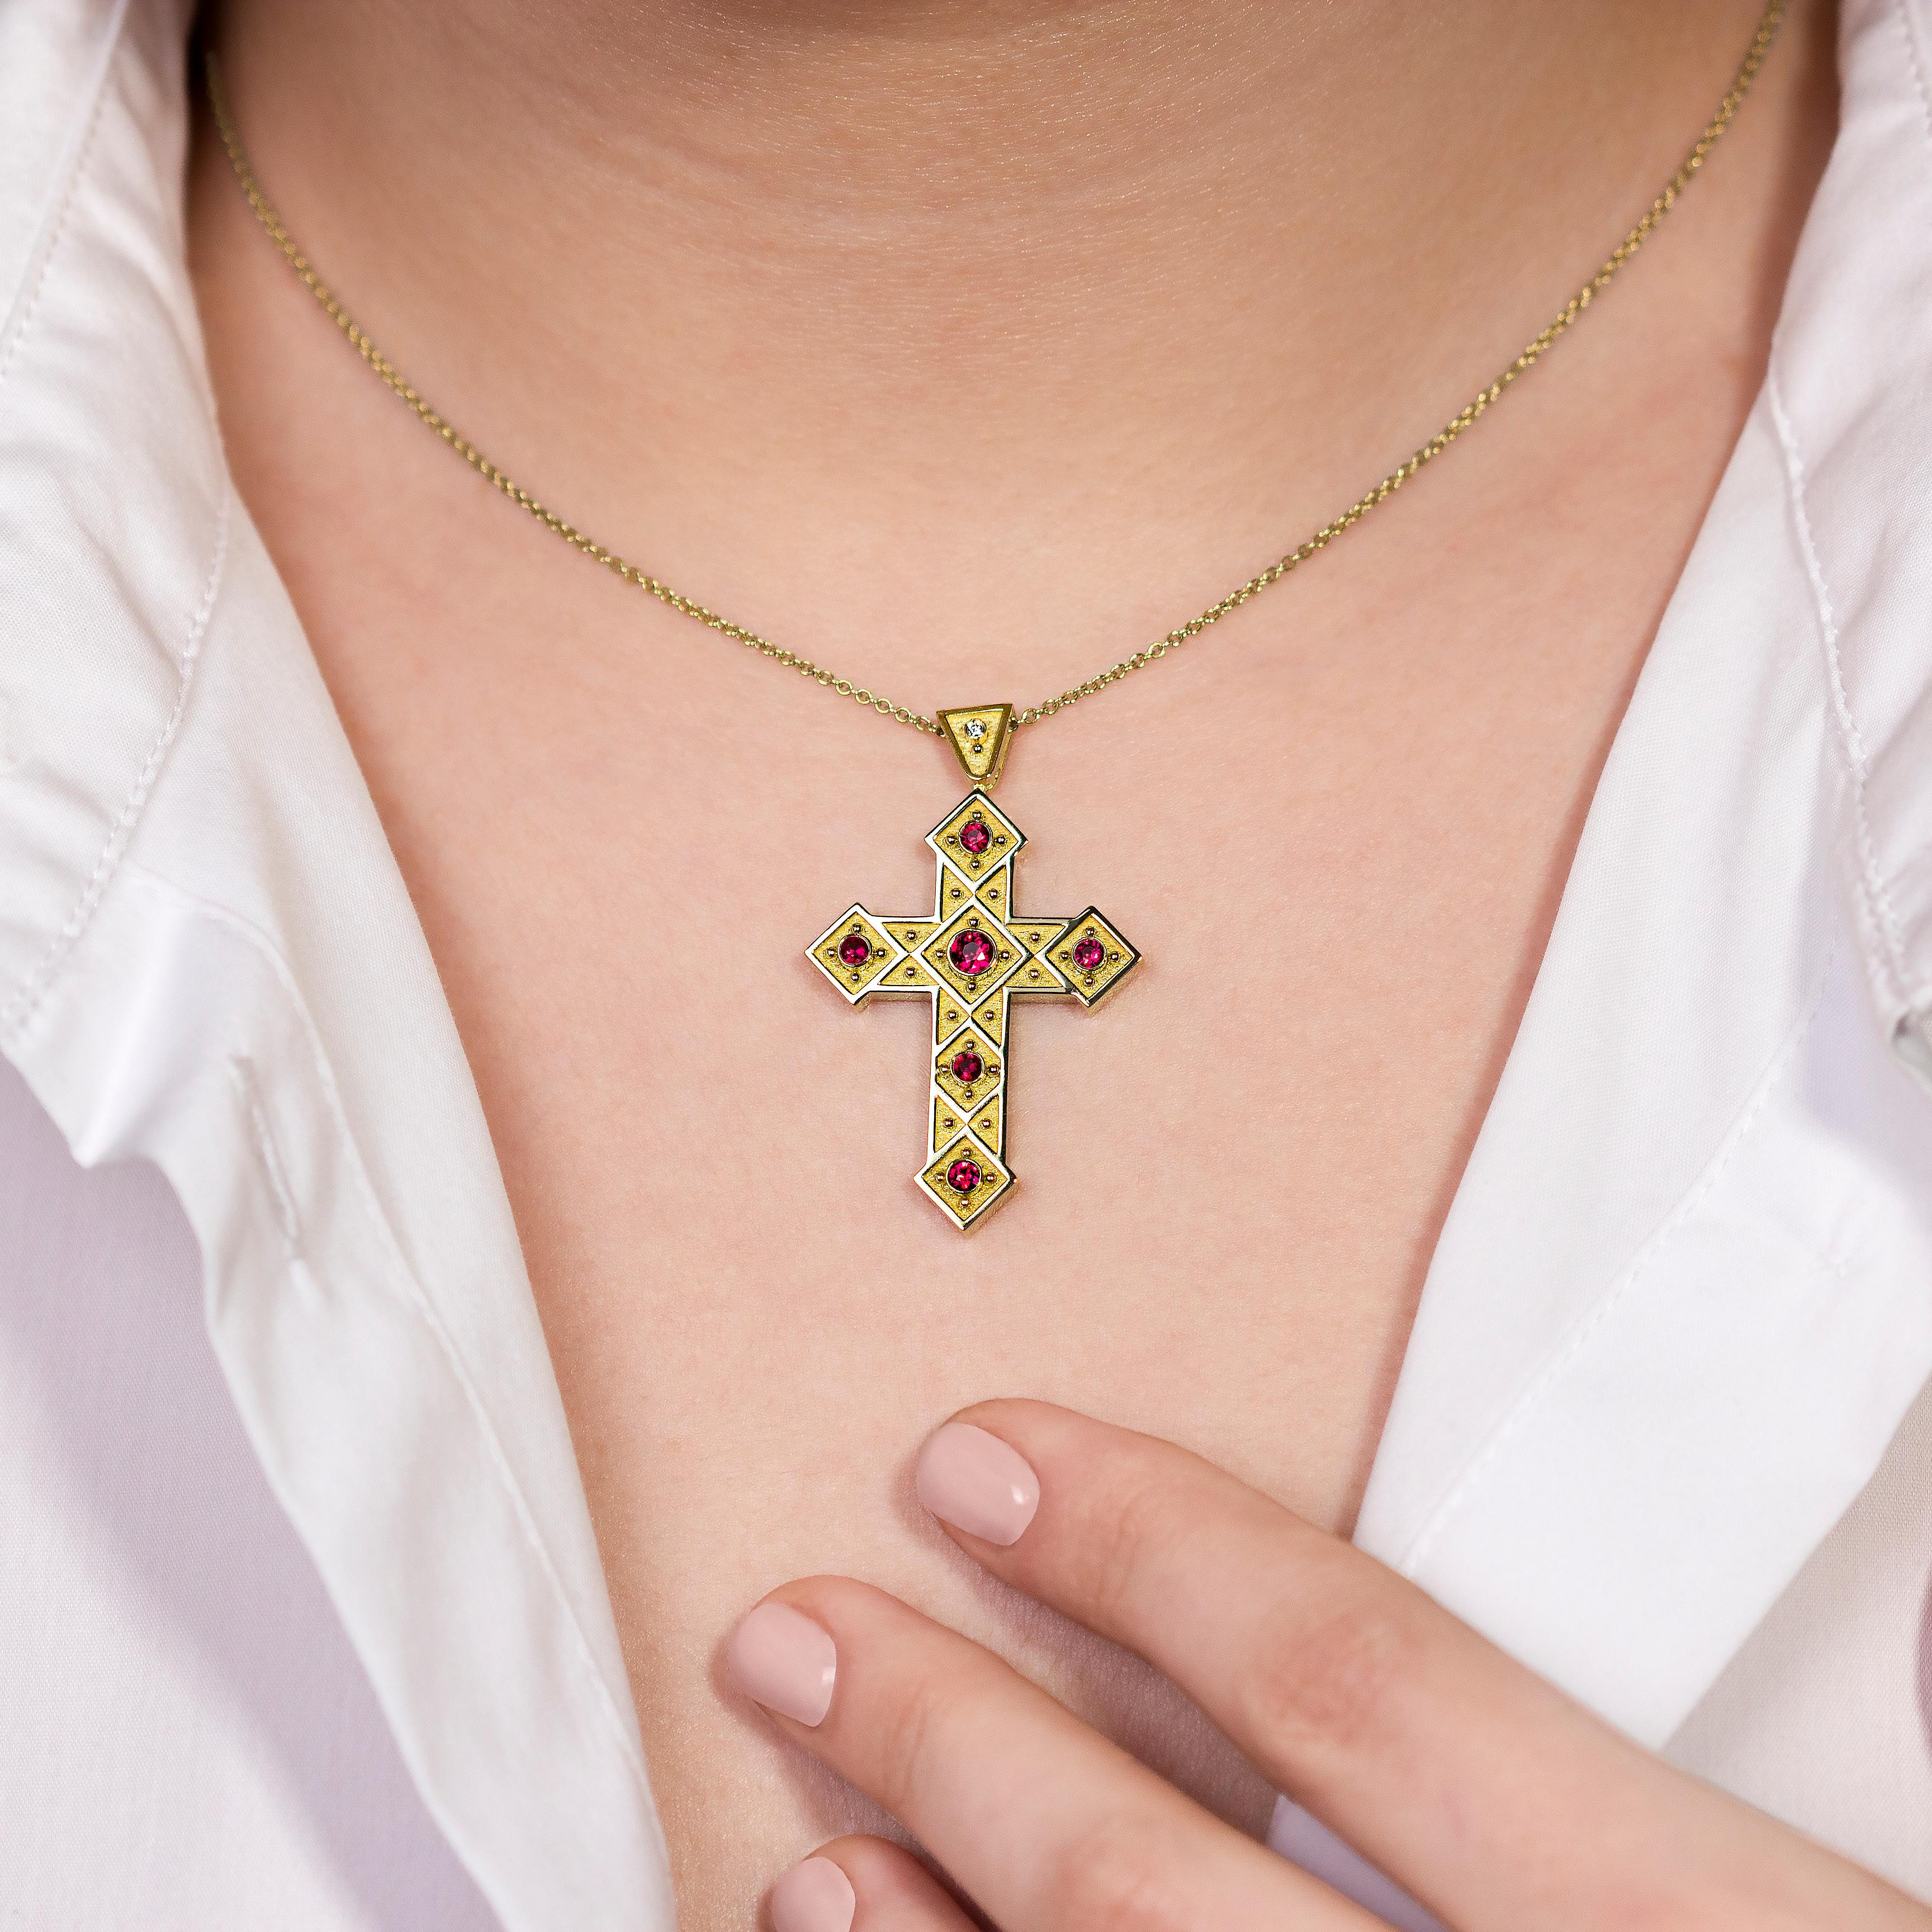 Cet exquis pendentif en forme de croix byzantine est un chef-d'œuvre rayonnant, où des carrés scintillants s'entrelacent avec l'éclat ardent de rubis radieux, célébrant l'art de l'artisanat ancien et la beauté opulente dans chaque détail.

100% fait